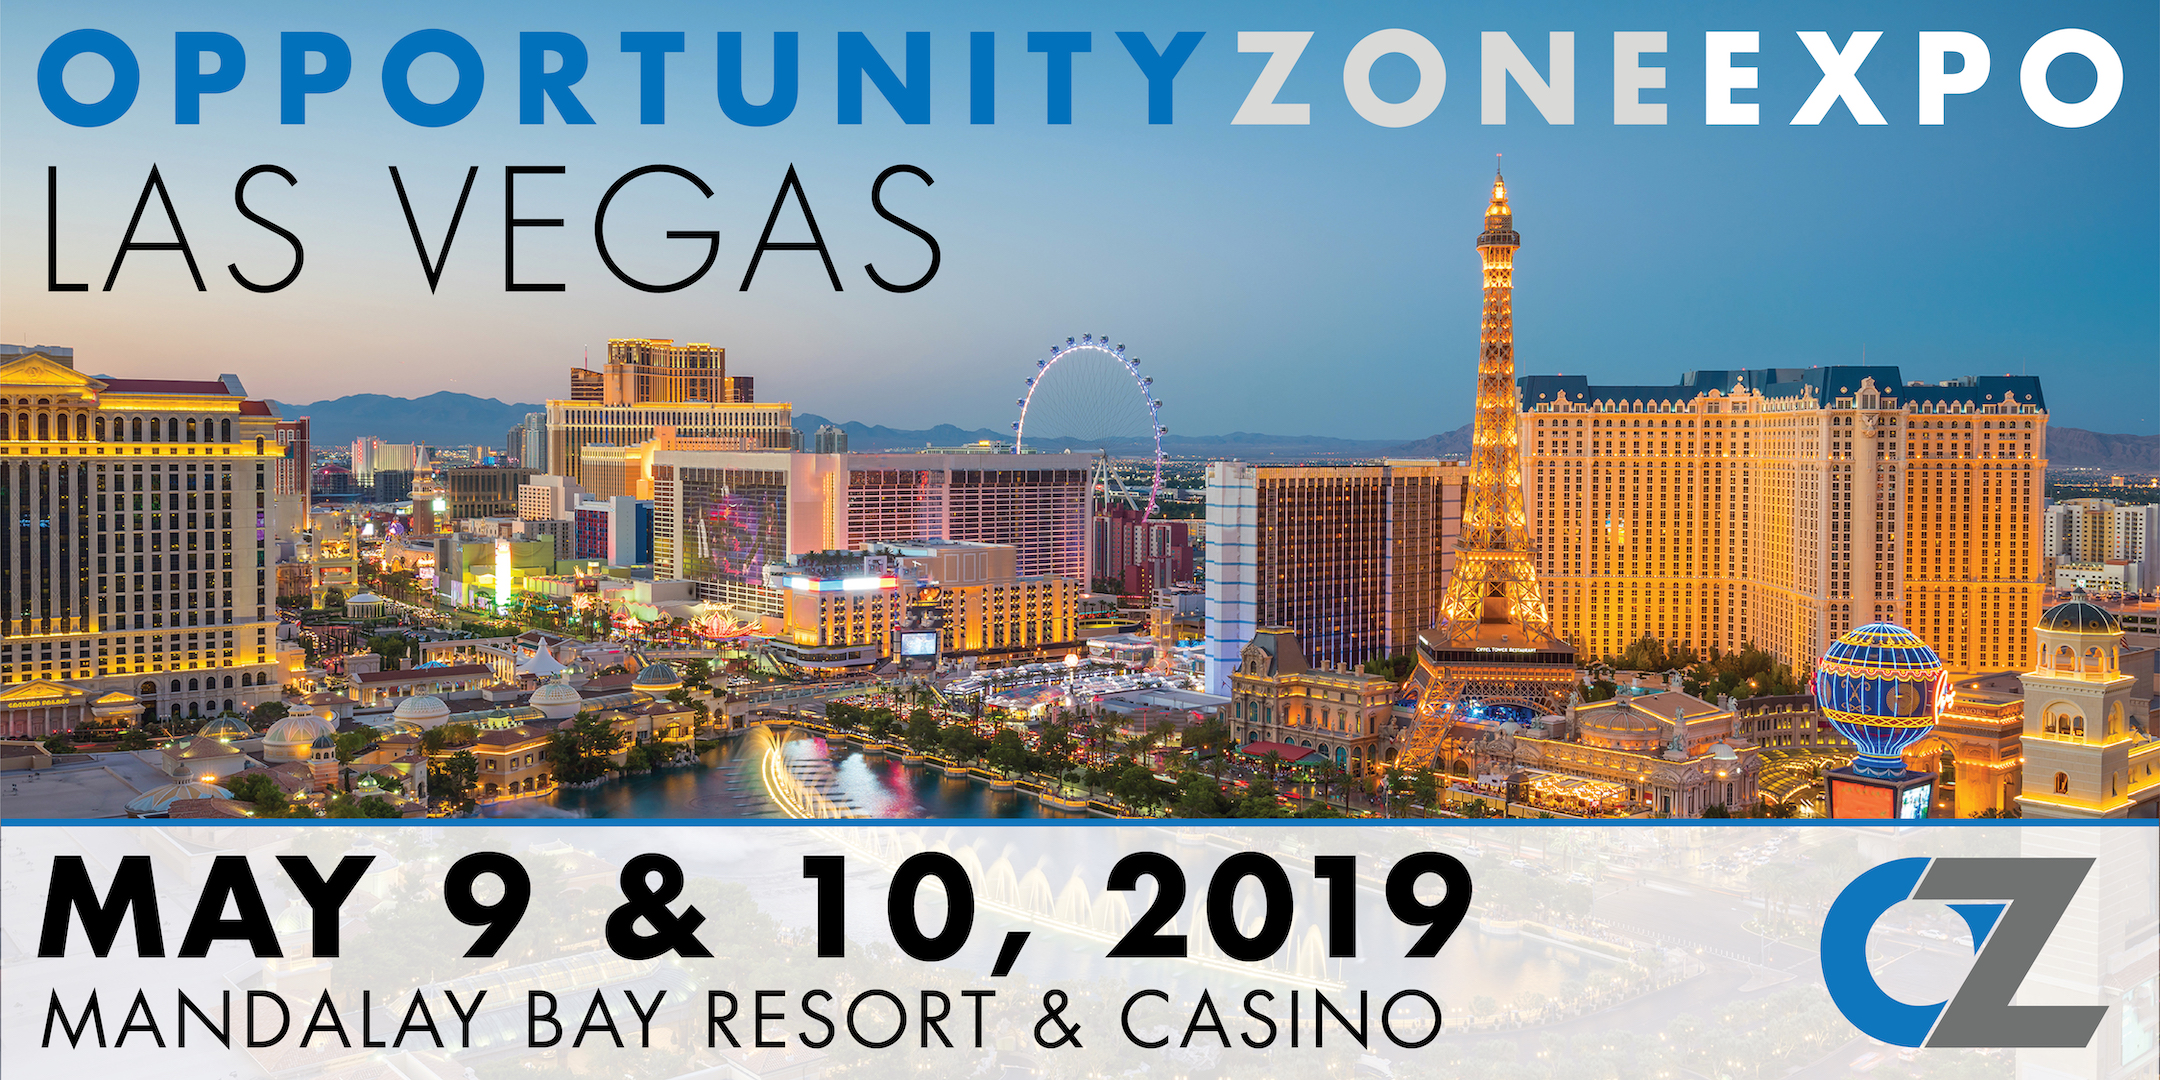 Opportunity Zone Expo Las Vegas 2019